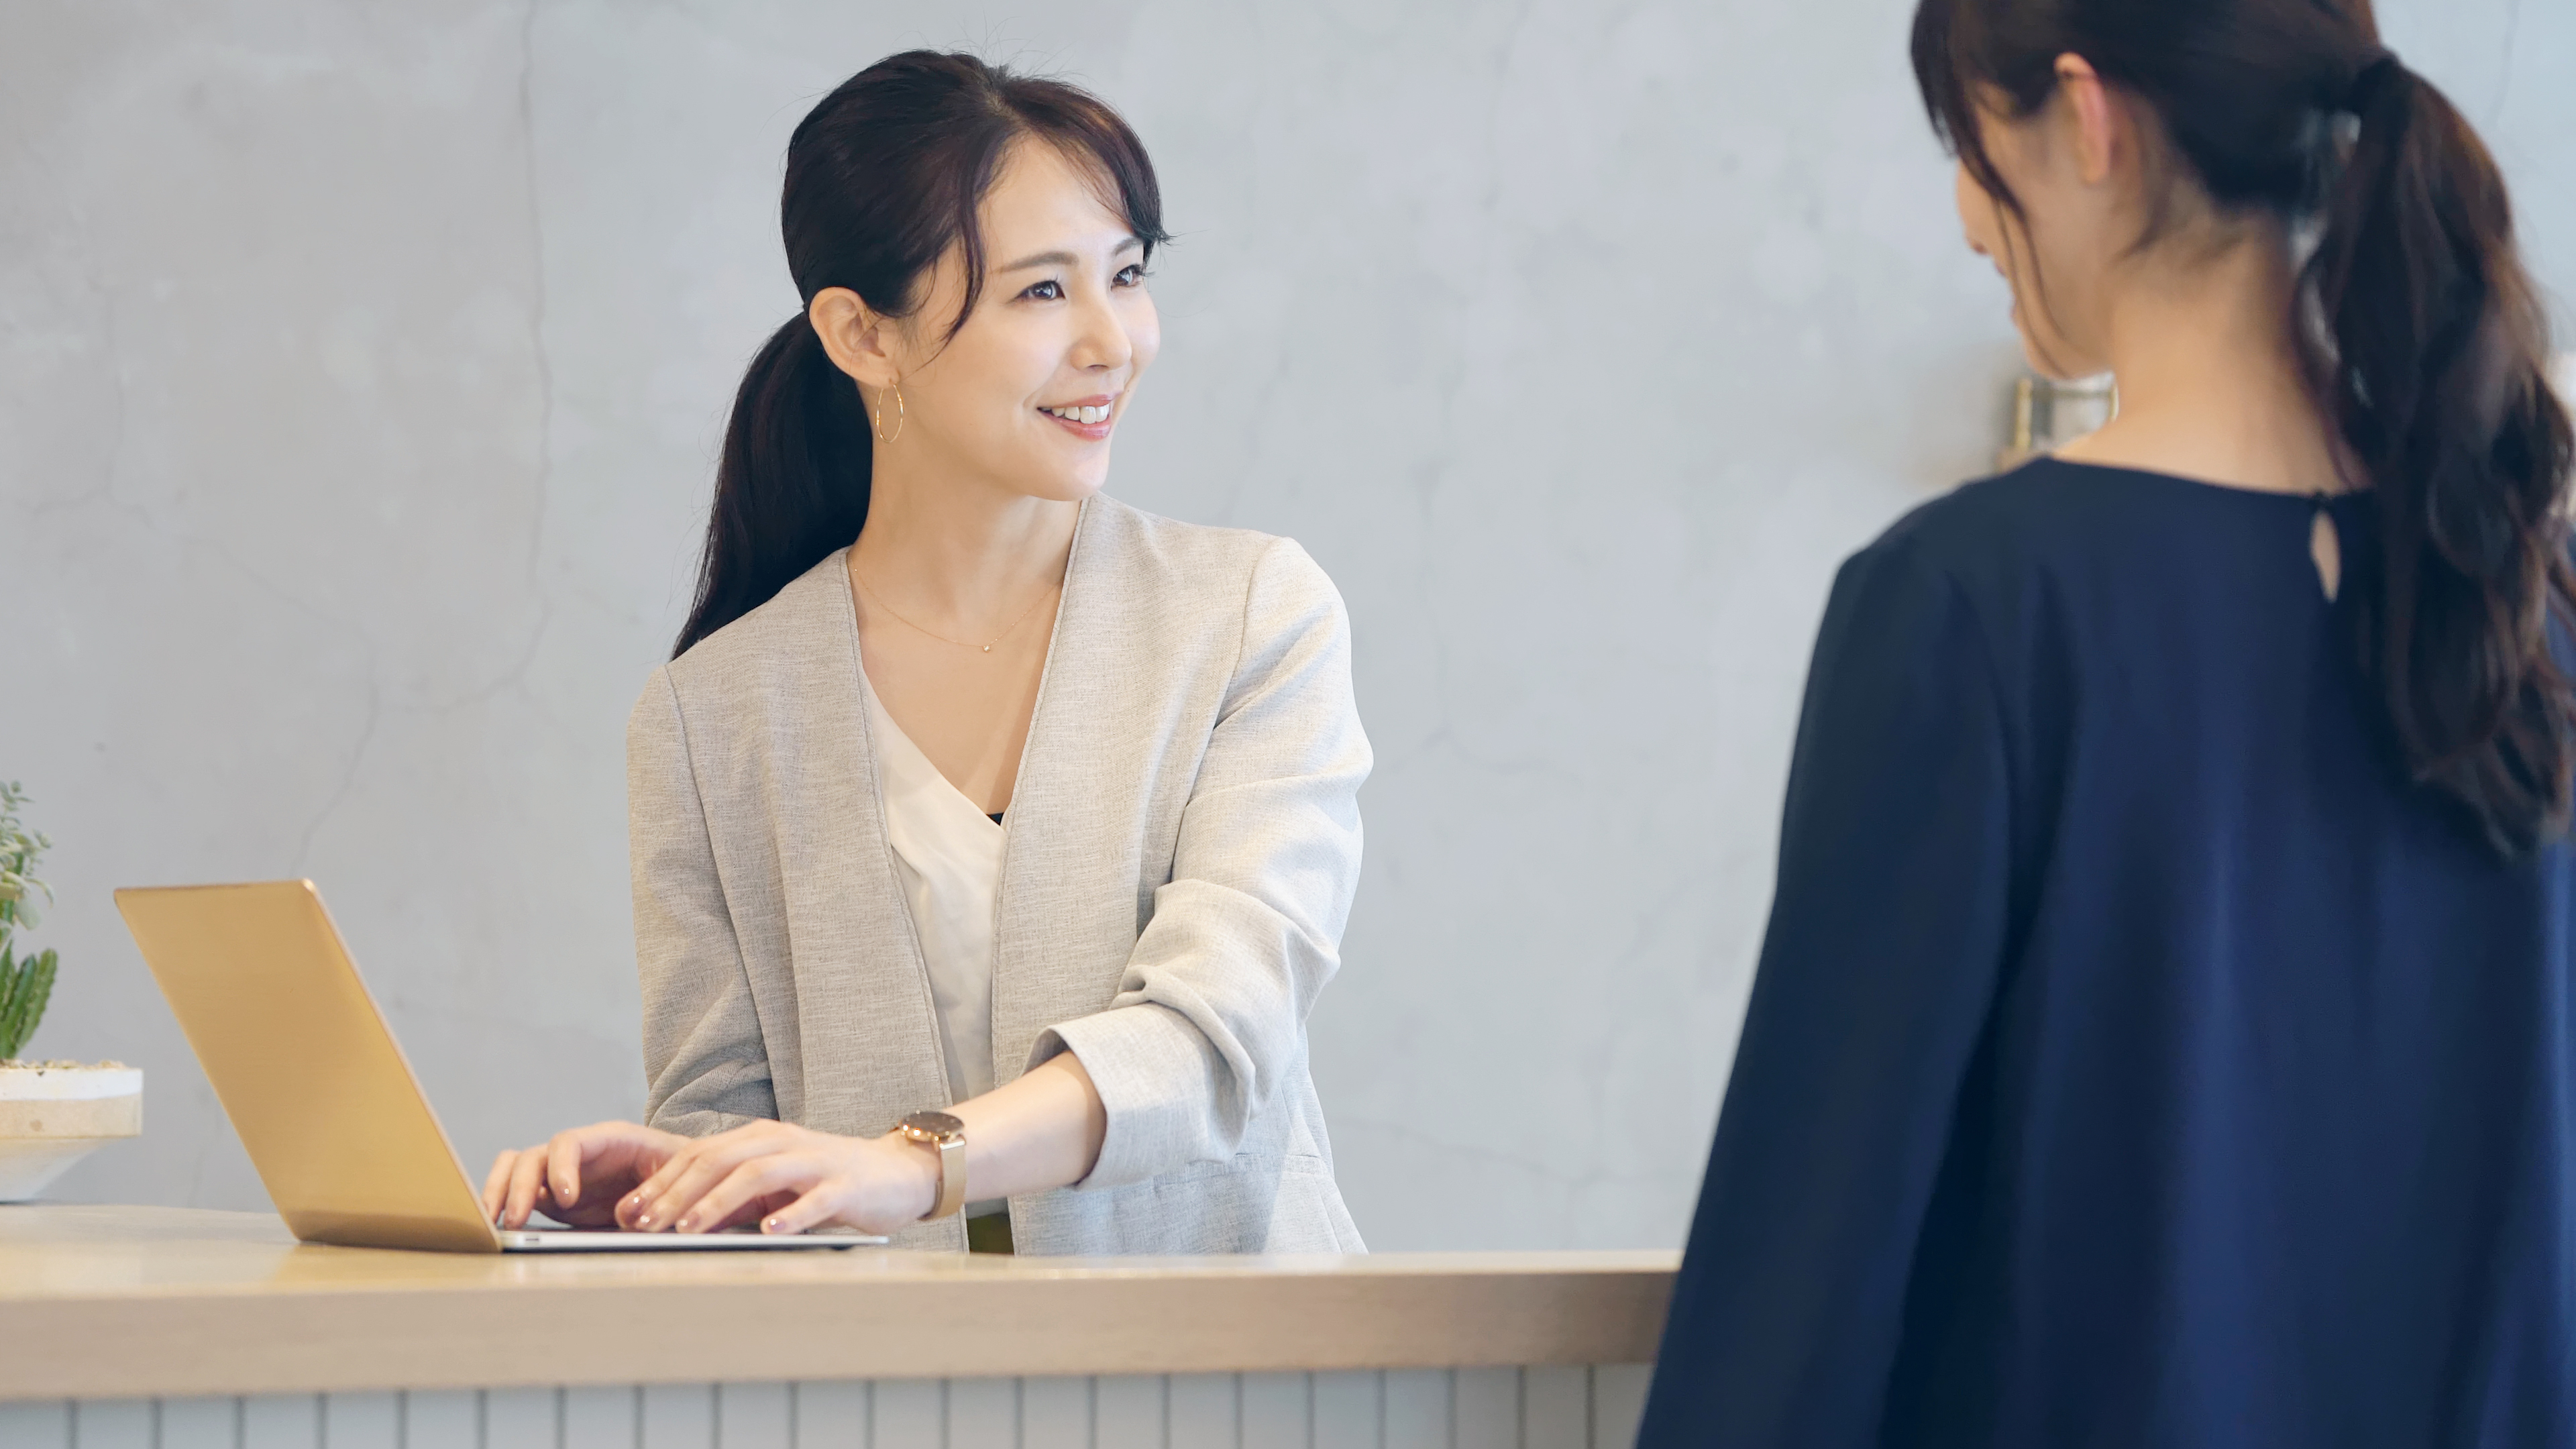 Une femme parle à une réceptionniste asiatique | Source : Shutterstock